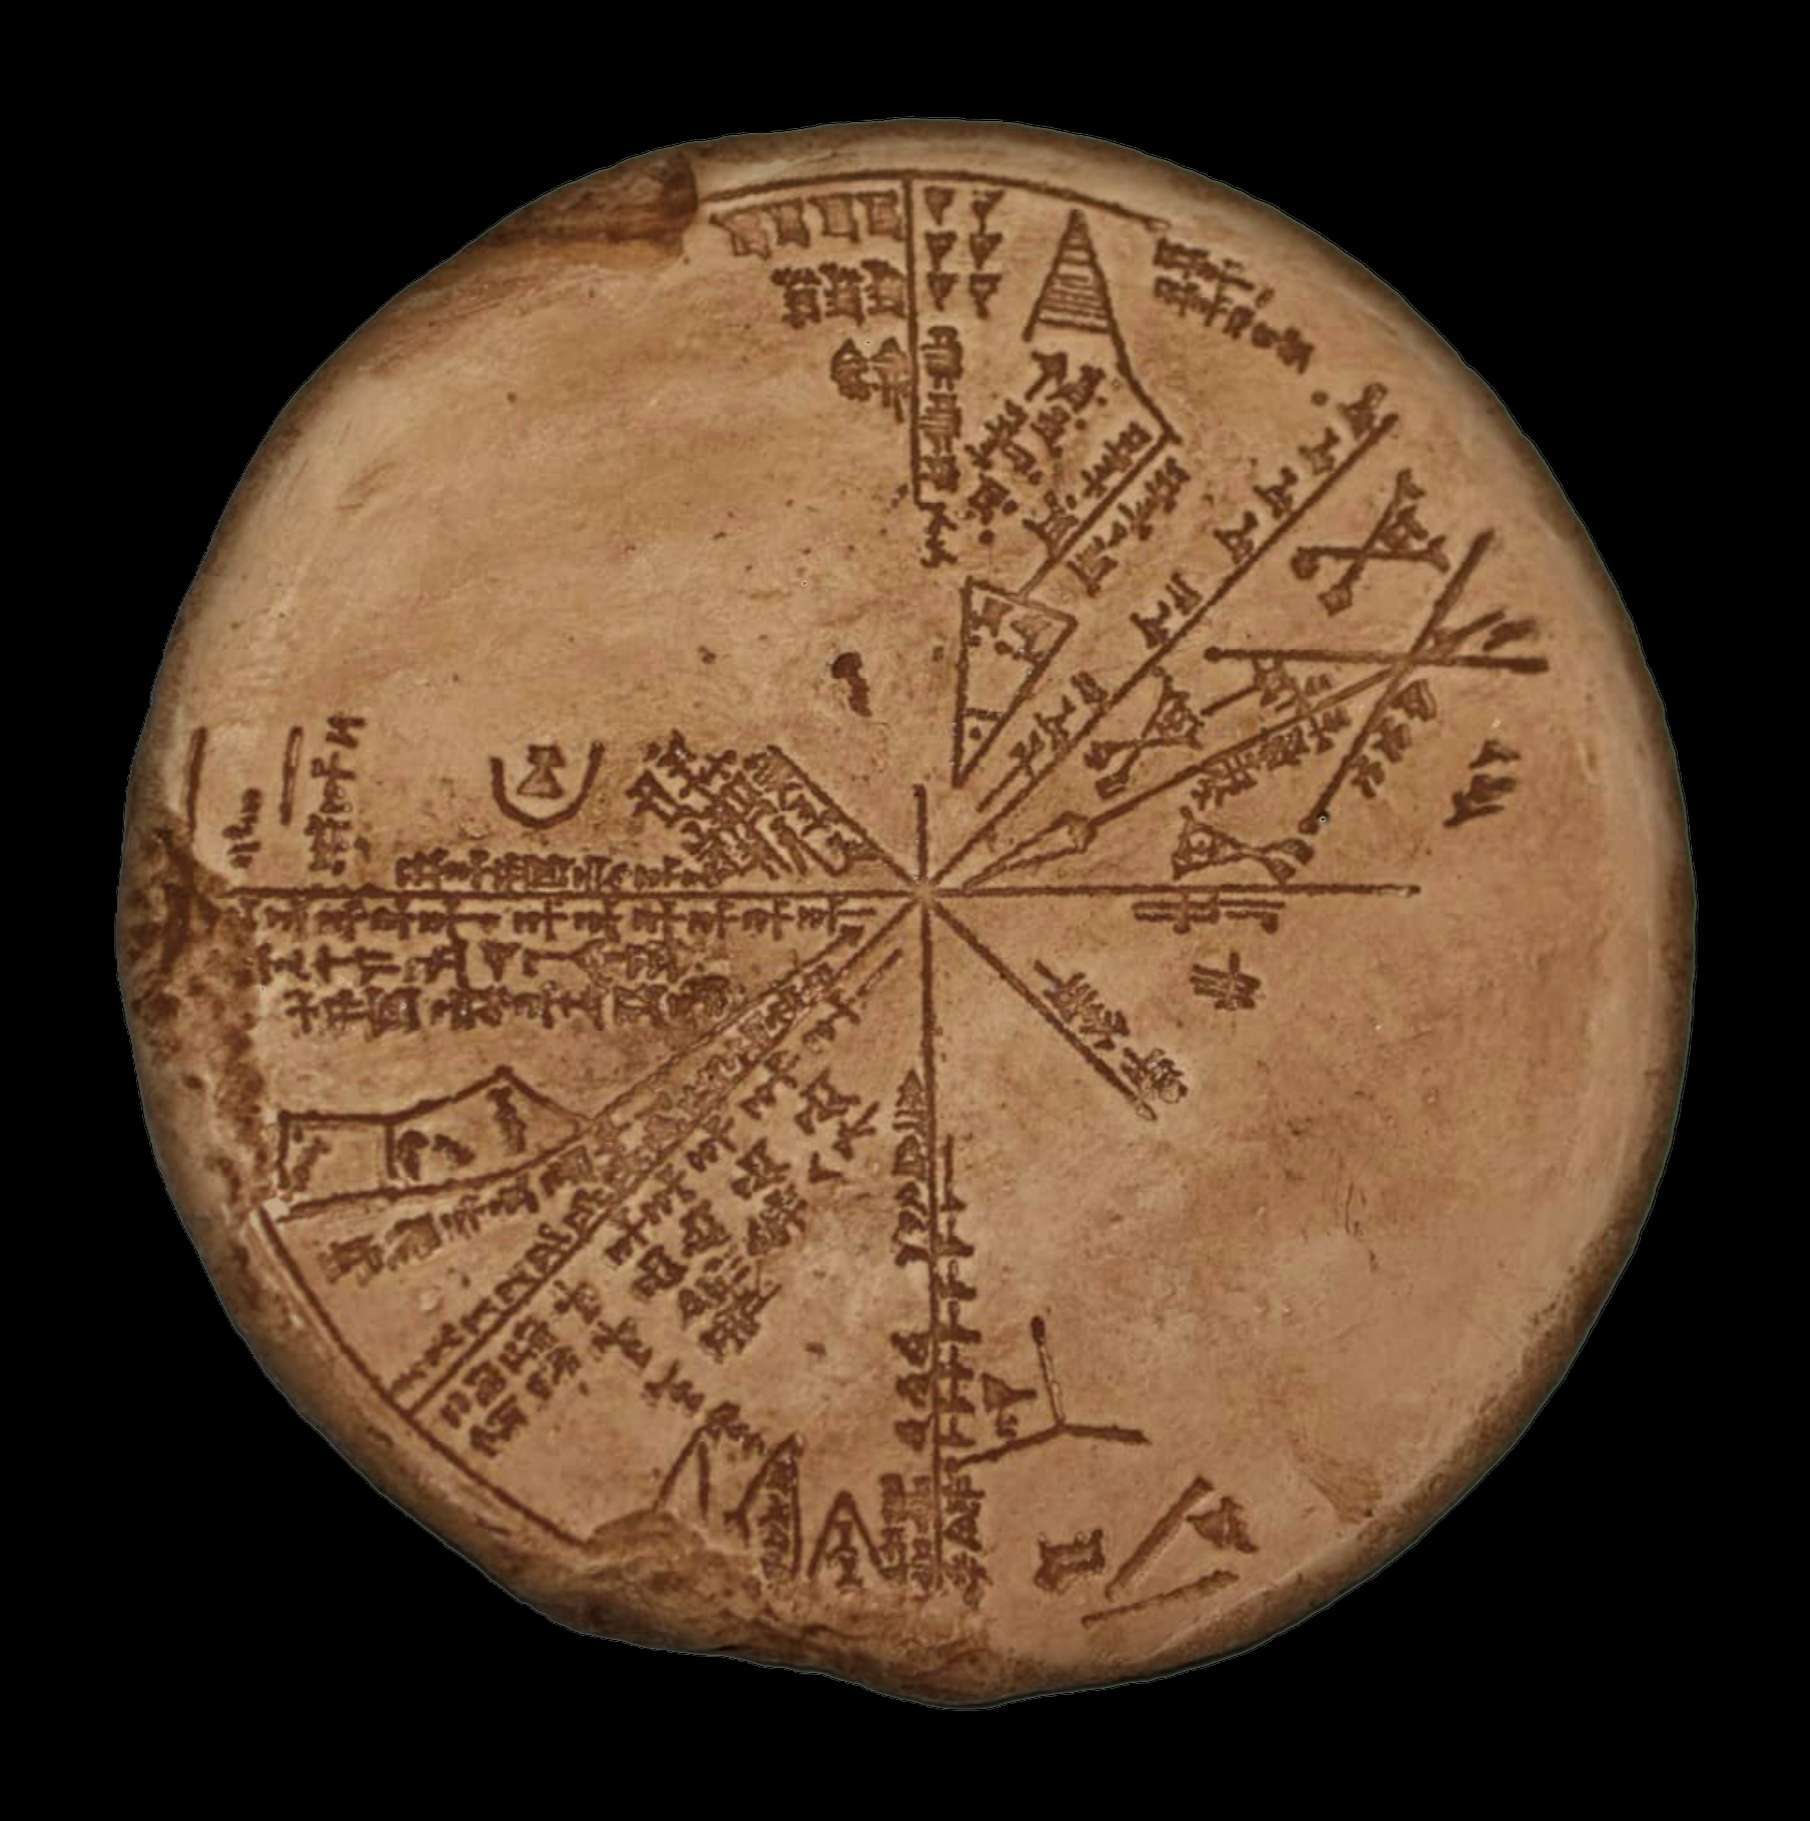 El planisferio sumerio | La tablilla cuneiforme en la colección del Museo Británico No K8538